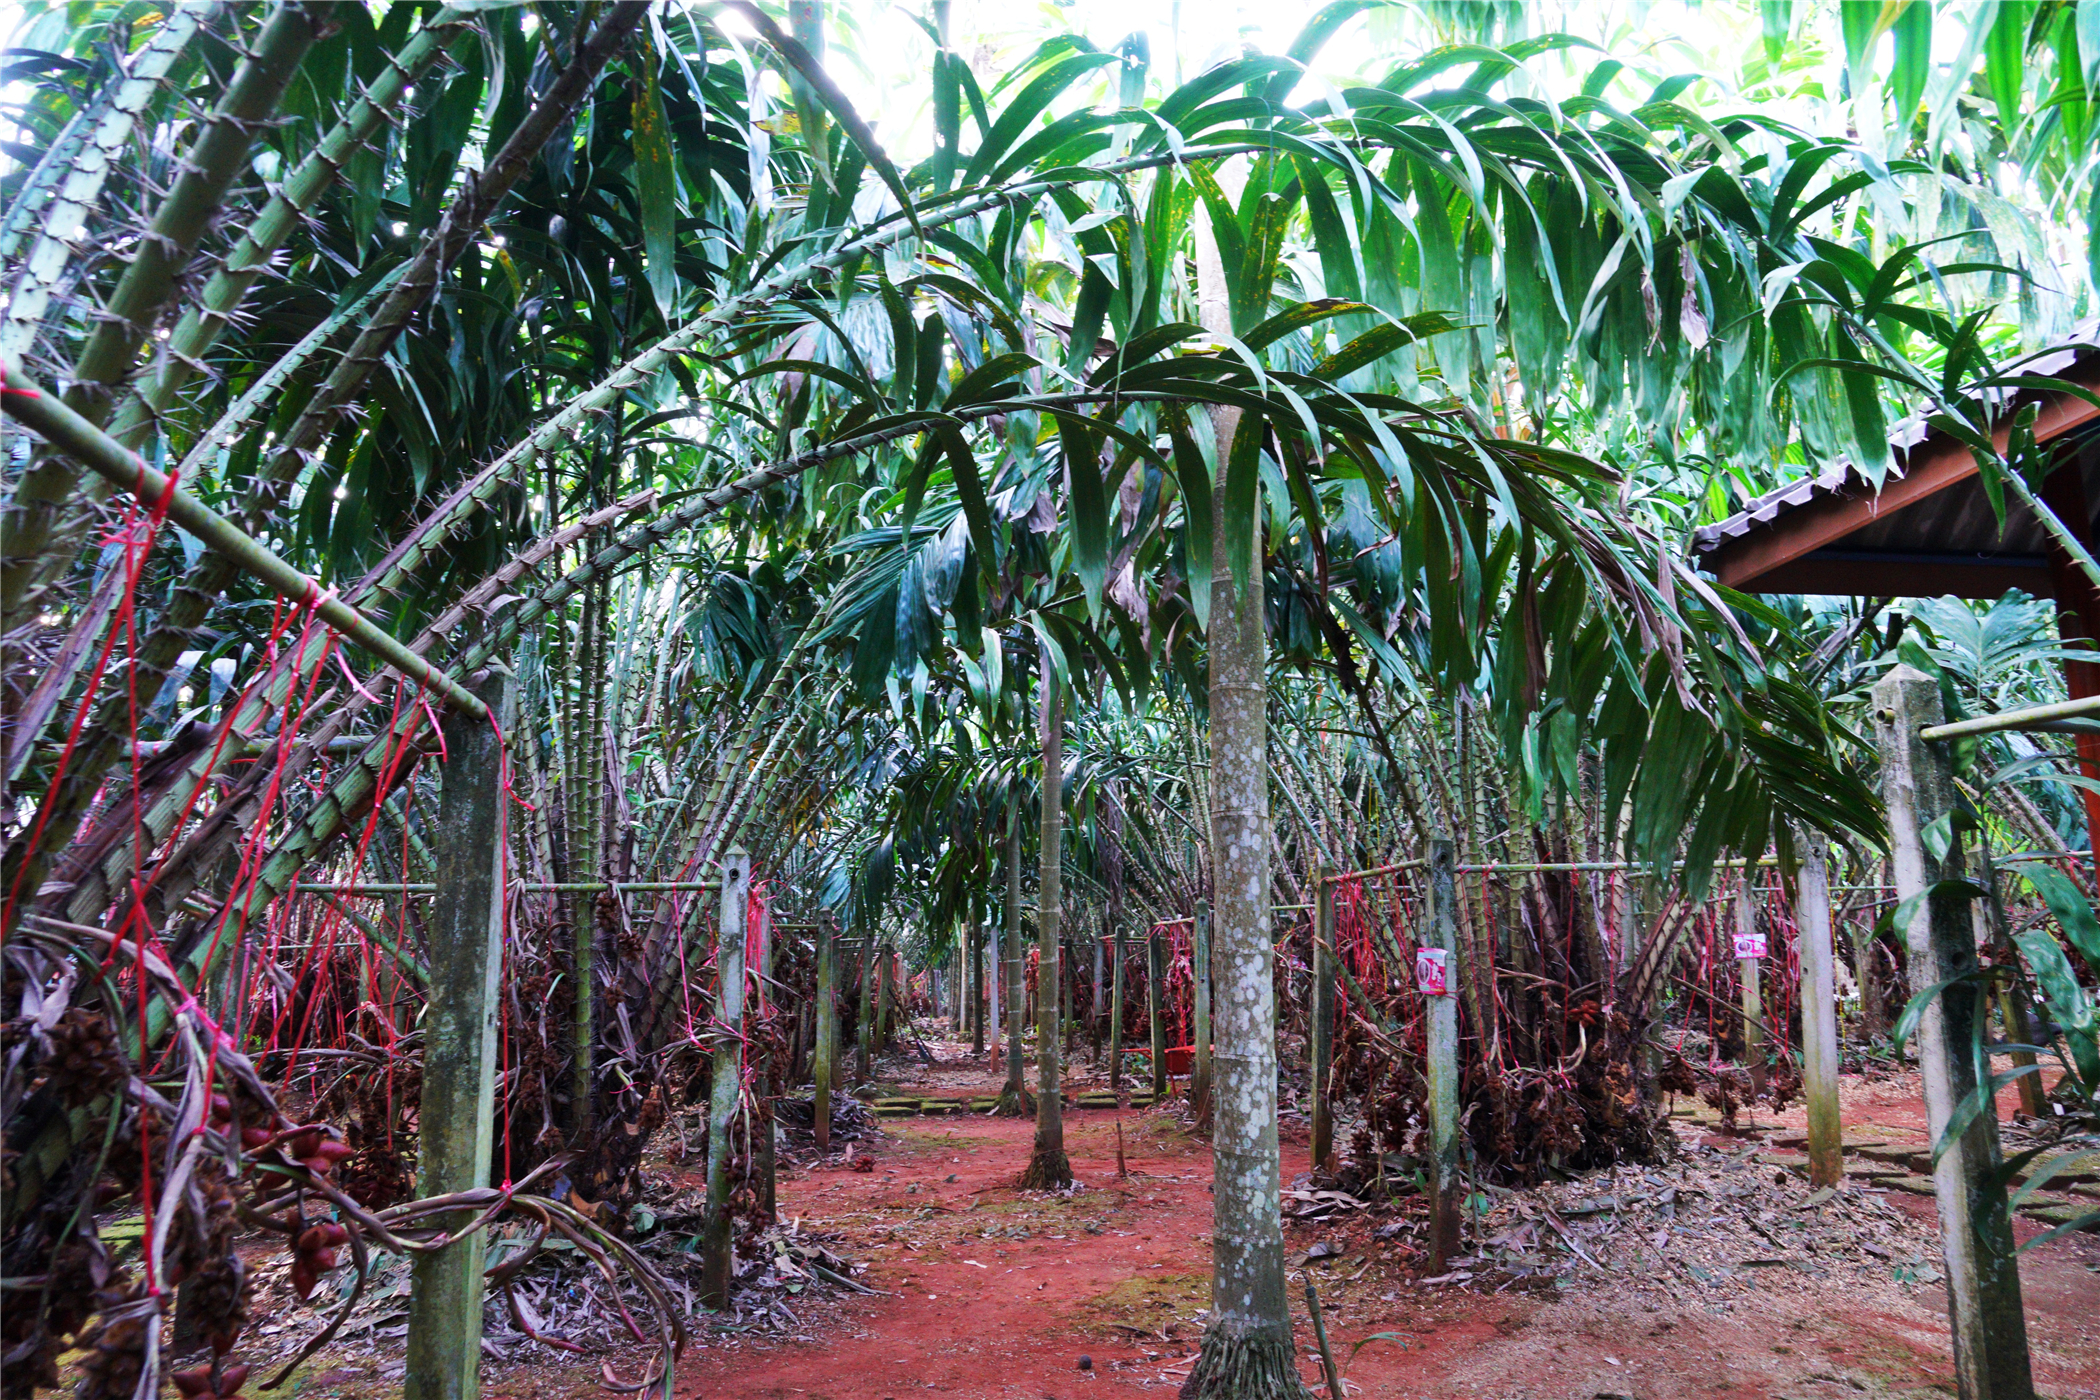 泰国尖竹汶蛇皮果种植园一年收益两百多万,老板说想来广州也开一家